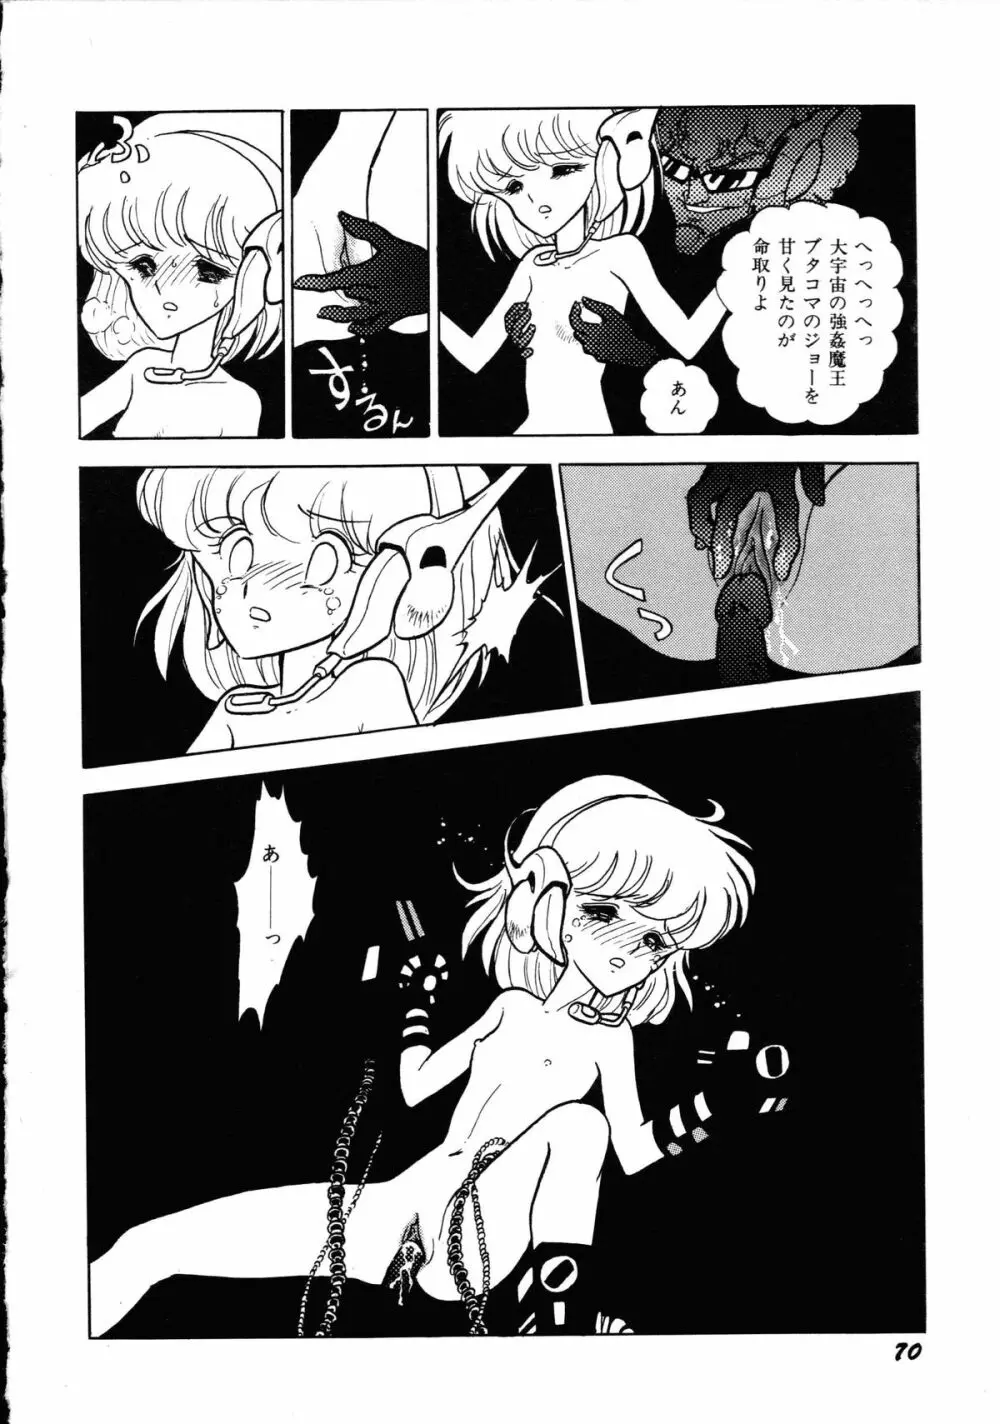 ロボット&美少女傑作選 レモン・ピープル1982-1986 74ページ